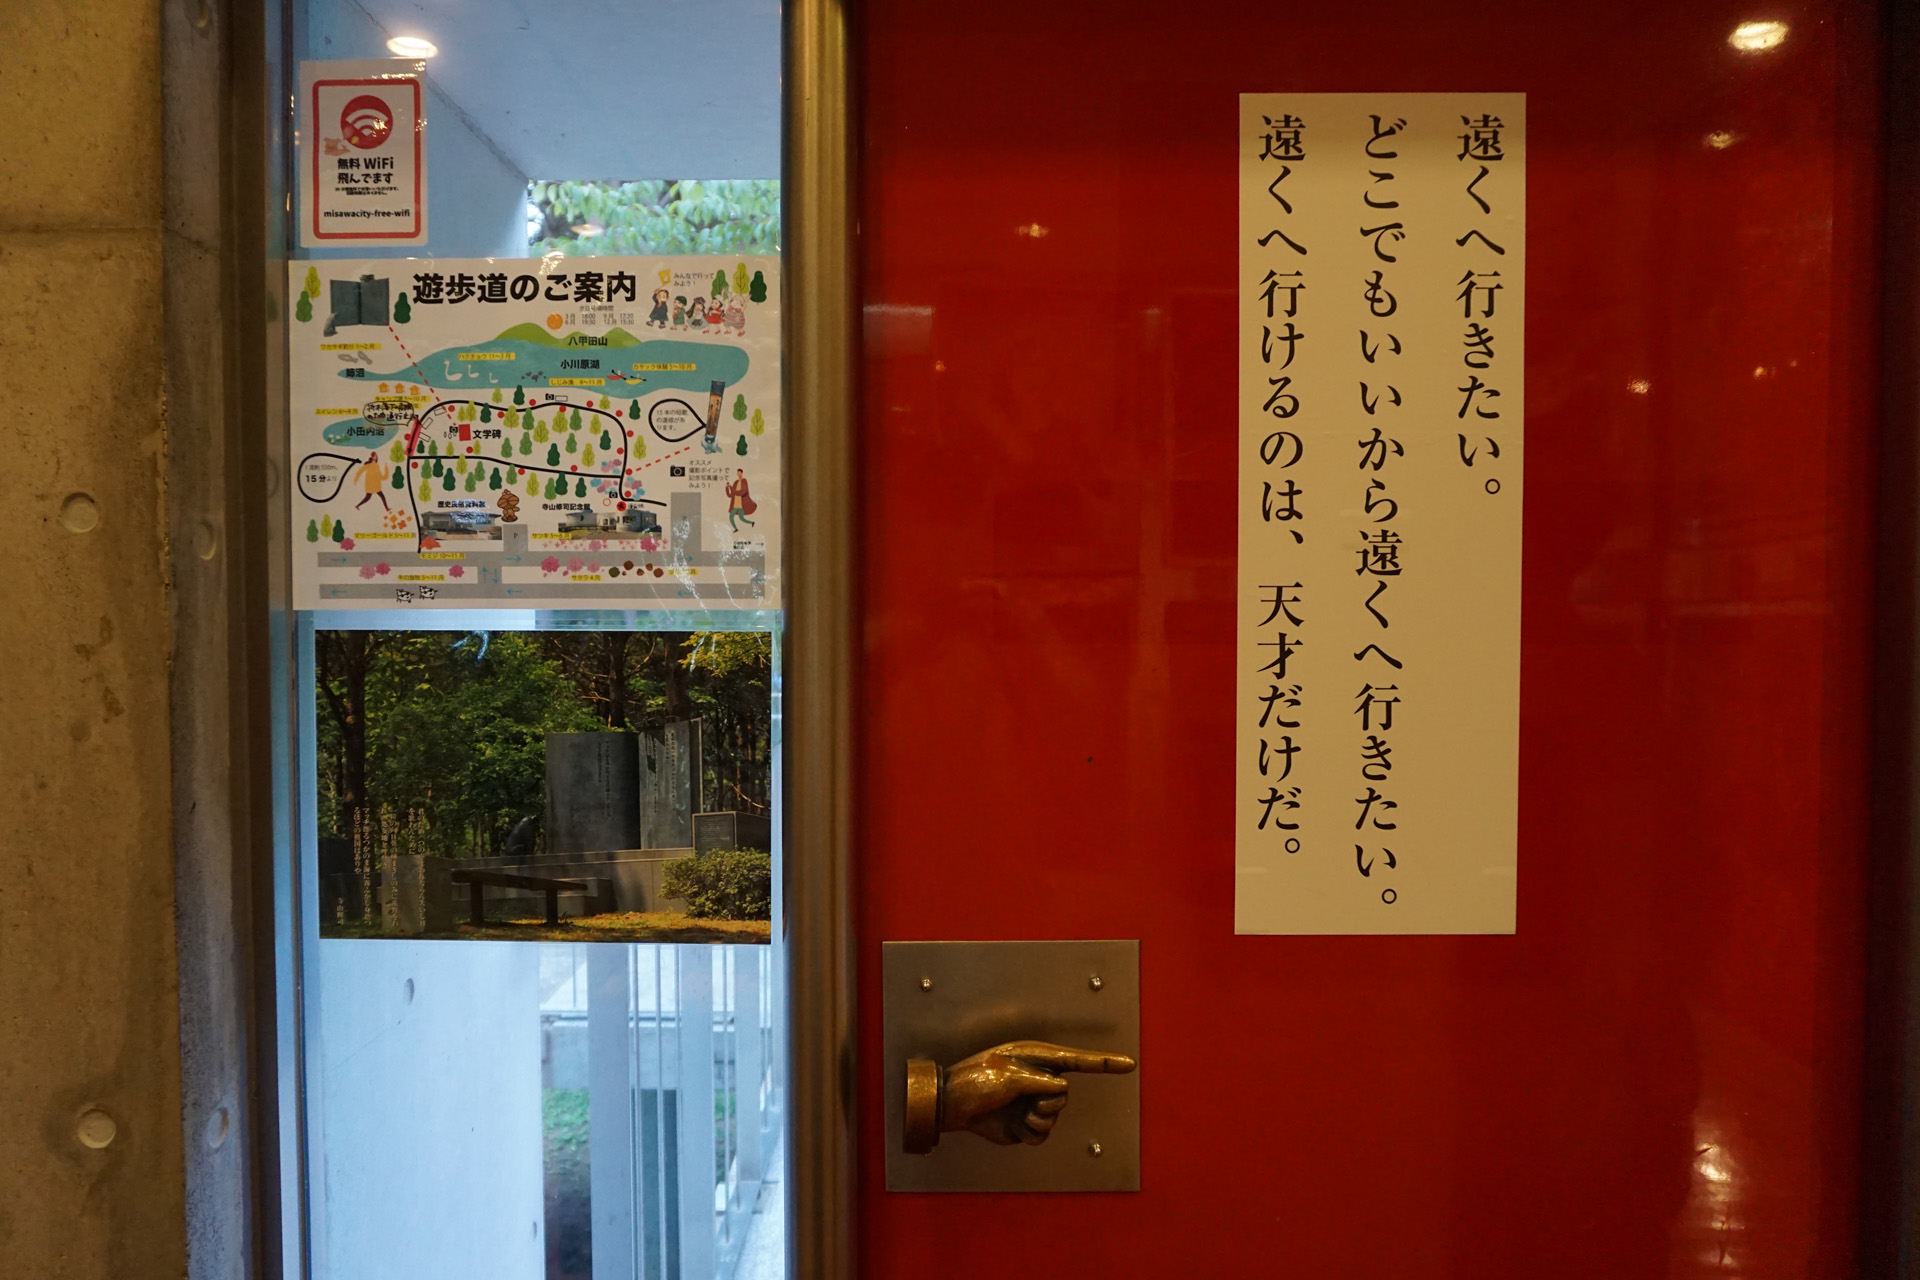 三沢市寺山修司記念館 青森県 ジャパンアヴァンギャルド ポスター展